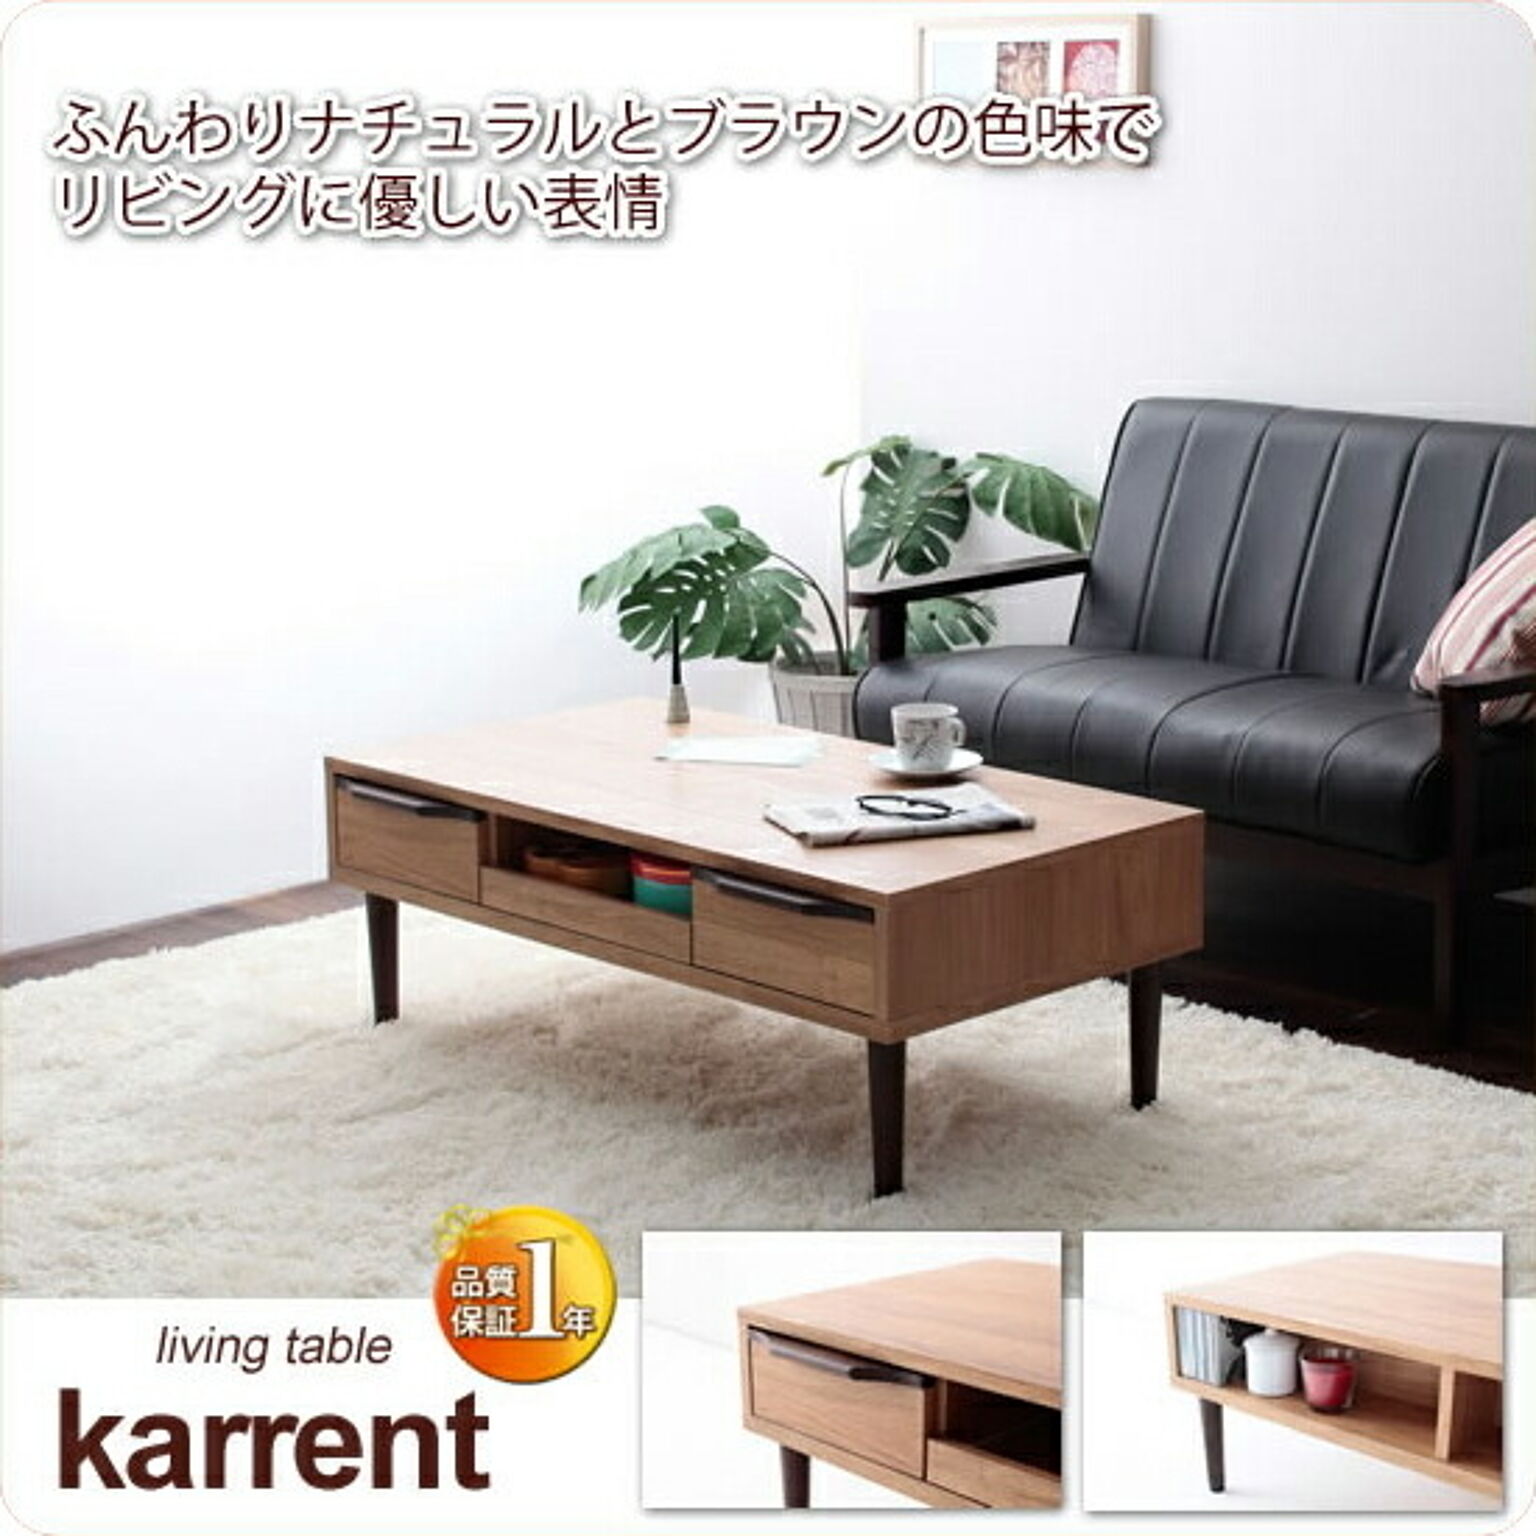 センターテーブル ローテーブル 机 つくえ【karrent】 ブラウン(brown) (ナチュラル) 幅104 収納付 リビングテーブル スライドラック付 引出し付 